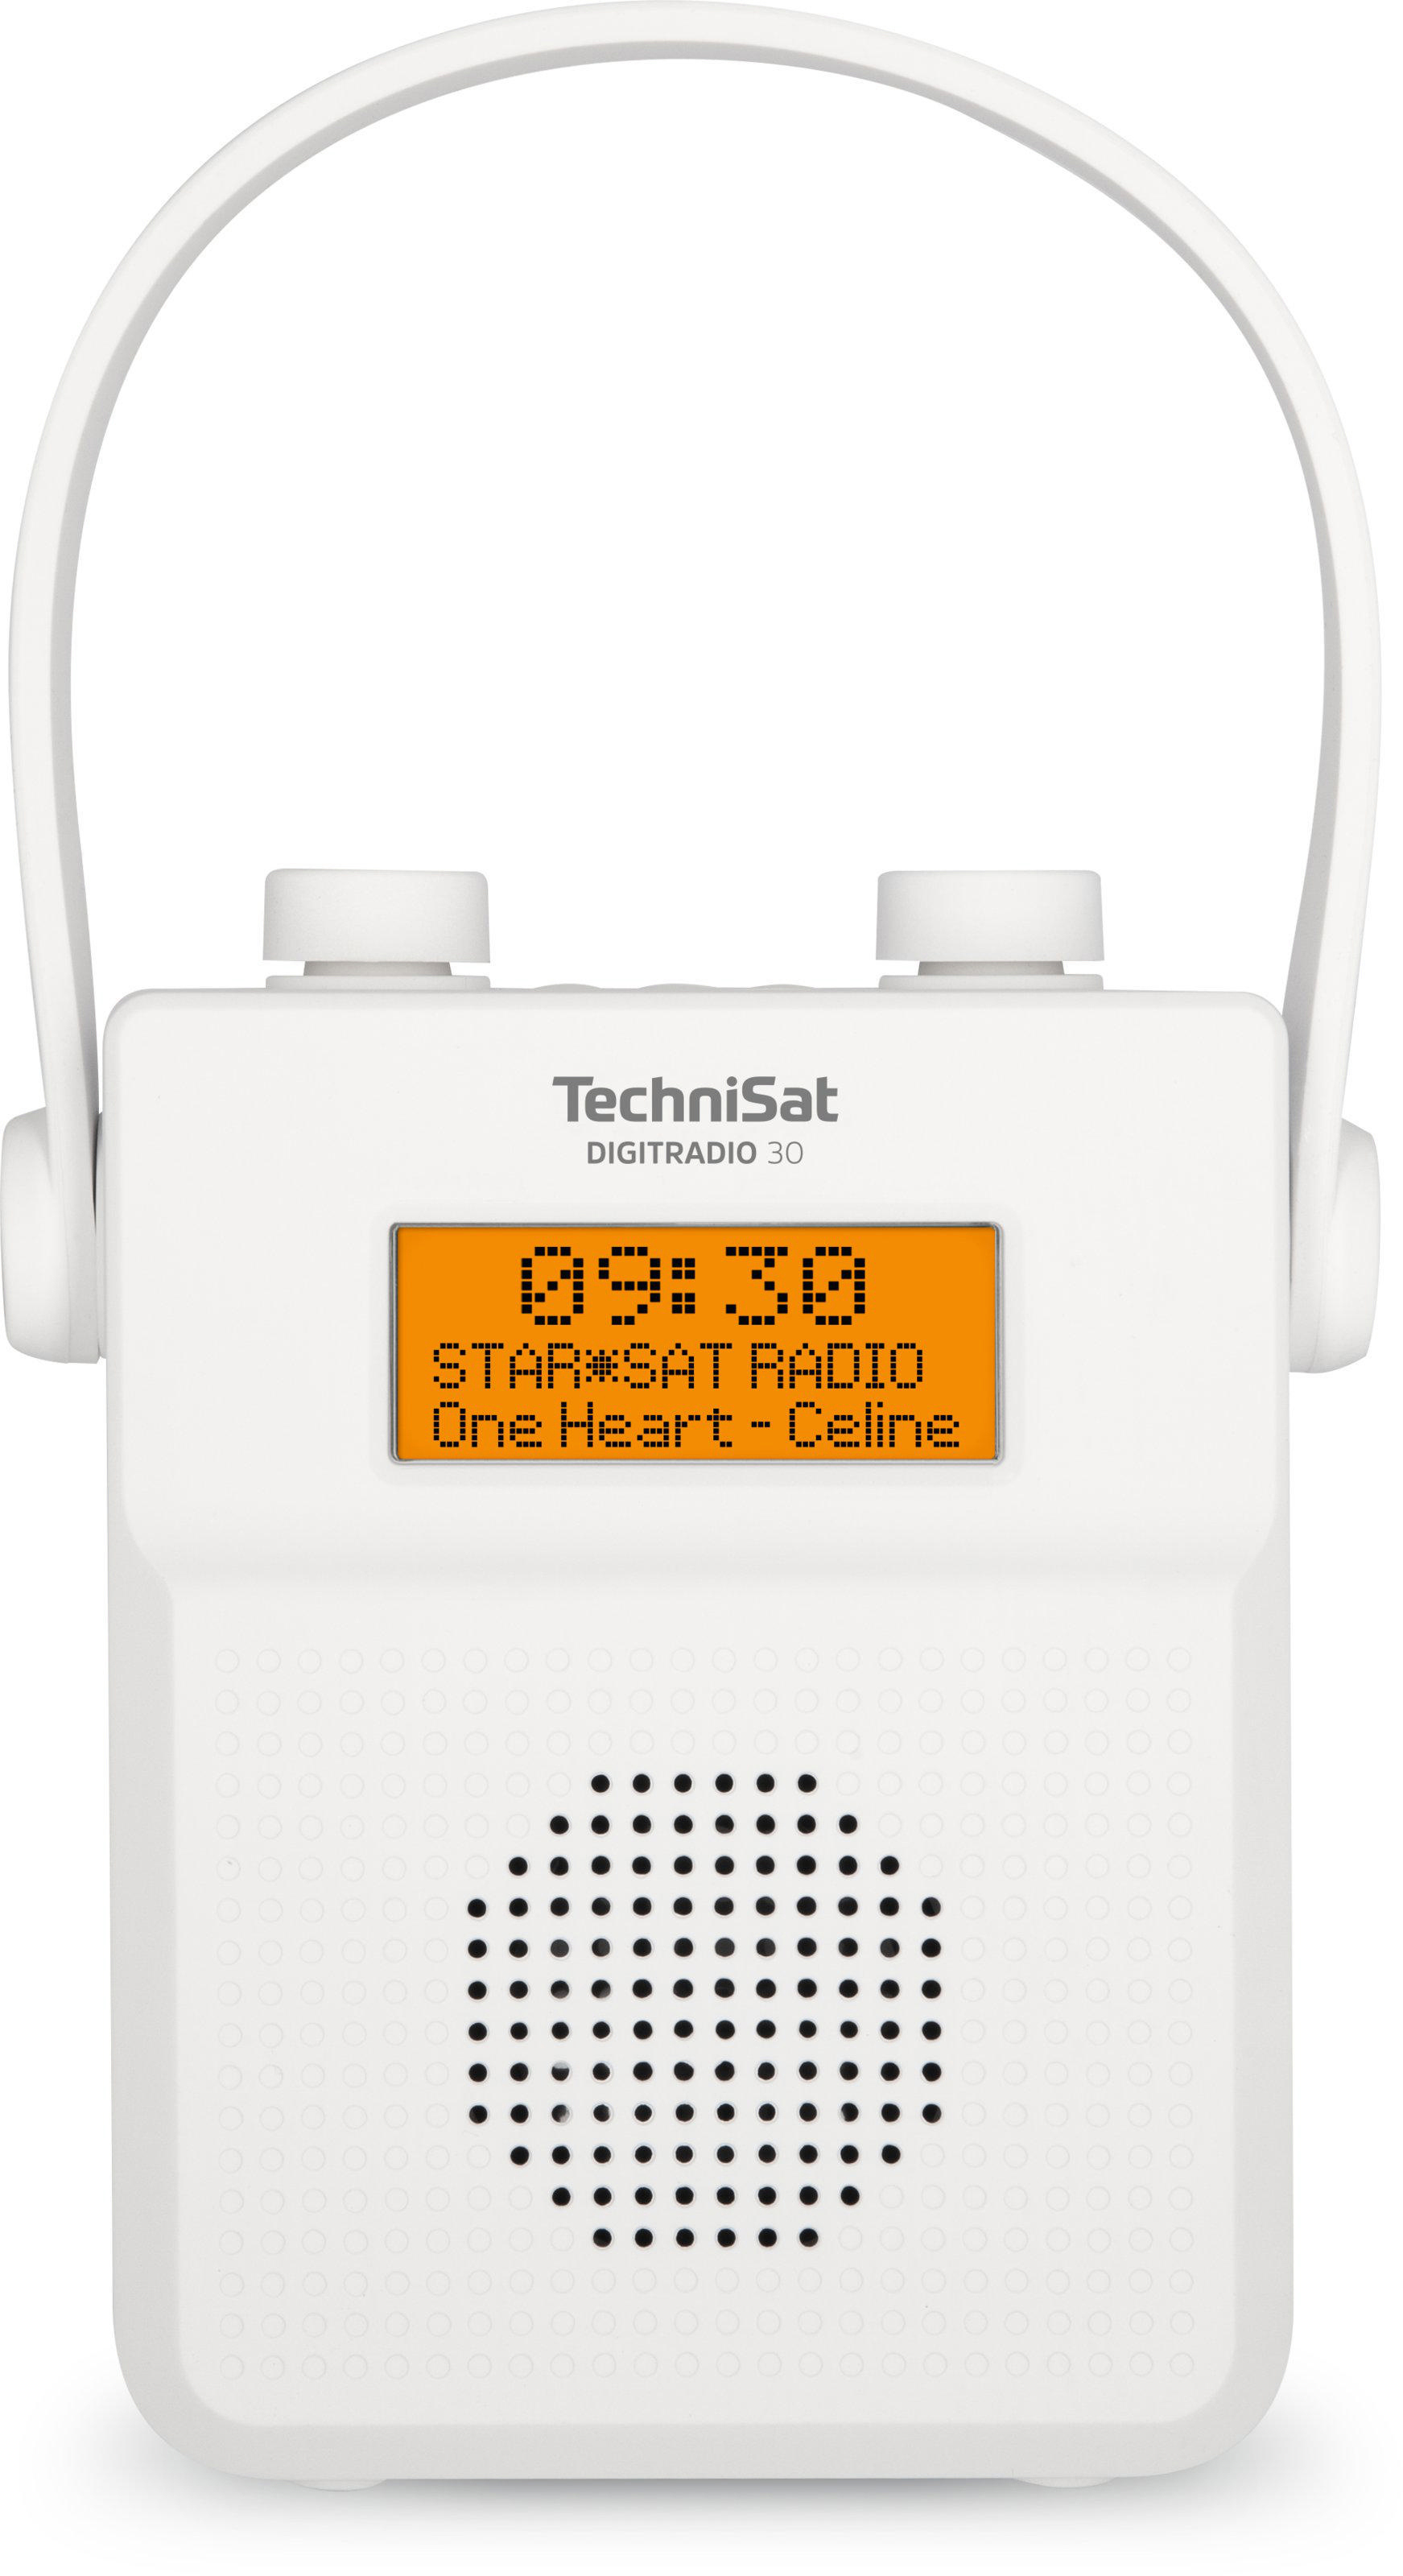 TECHNISAT DIGITRADIO Weiß 30 Duschradio, Portables DAB+, FM